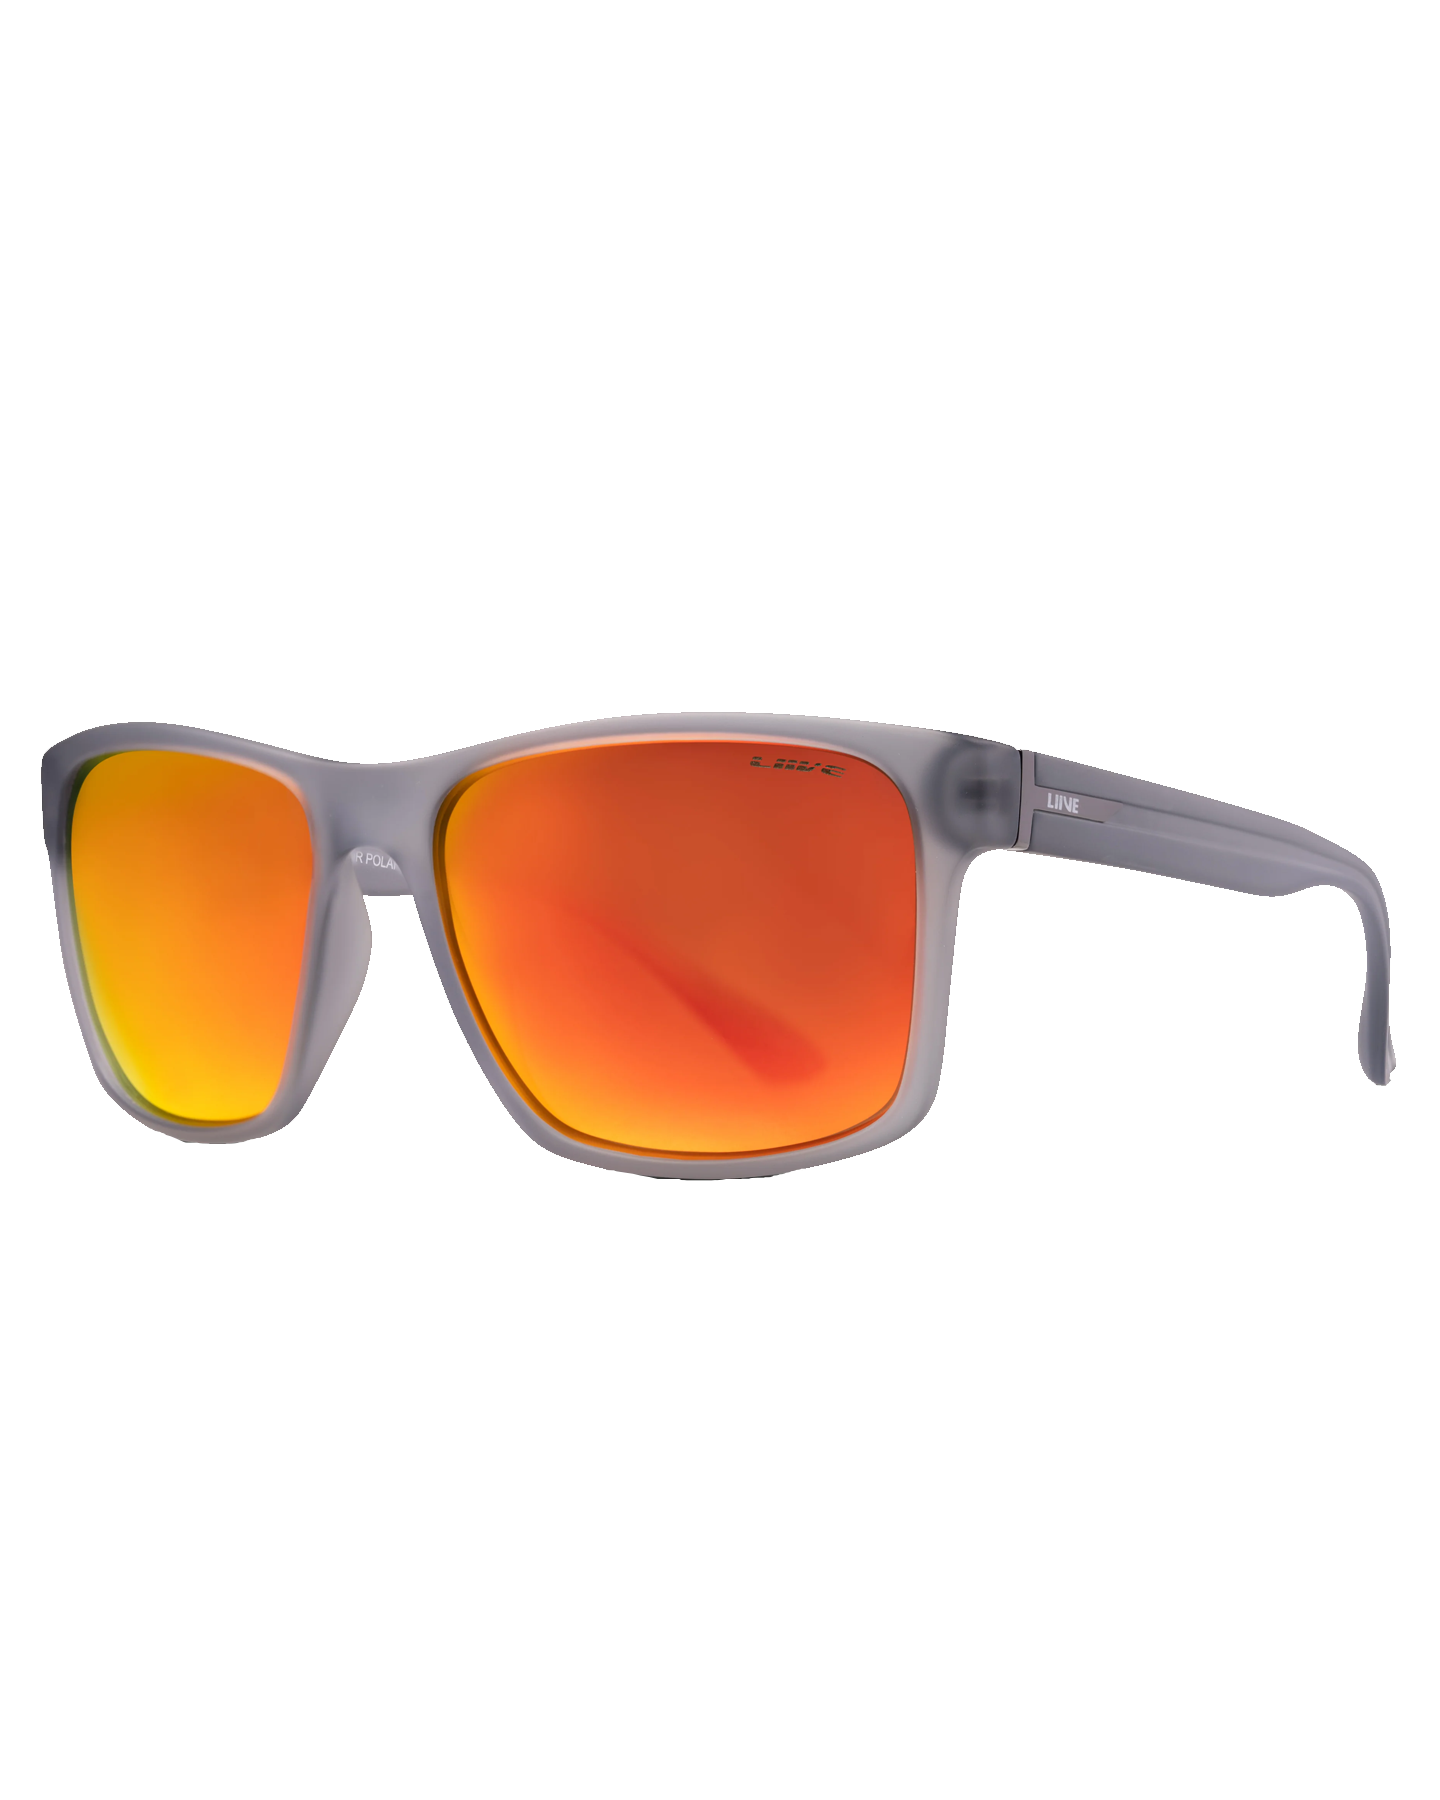 Liive Kerrbox Sunglasses - Polar Matte Xtal Orange Sunglasses - Trojan Wake Ski Snow